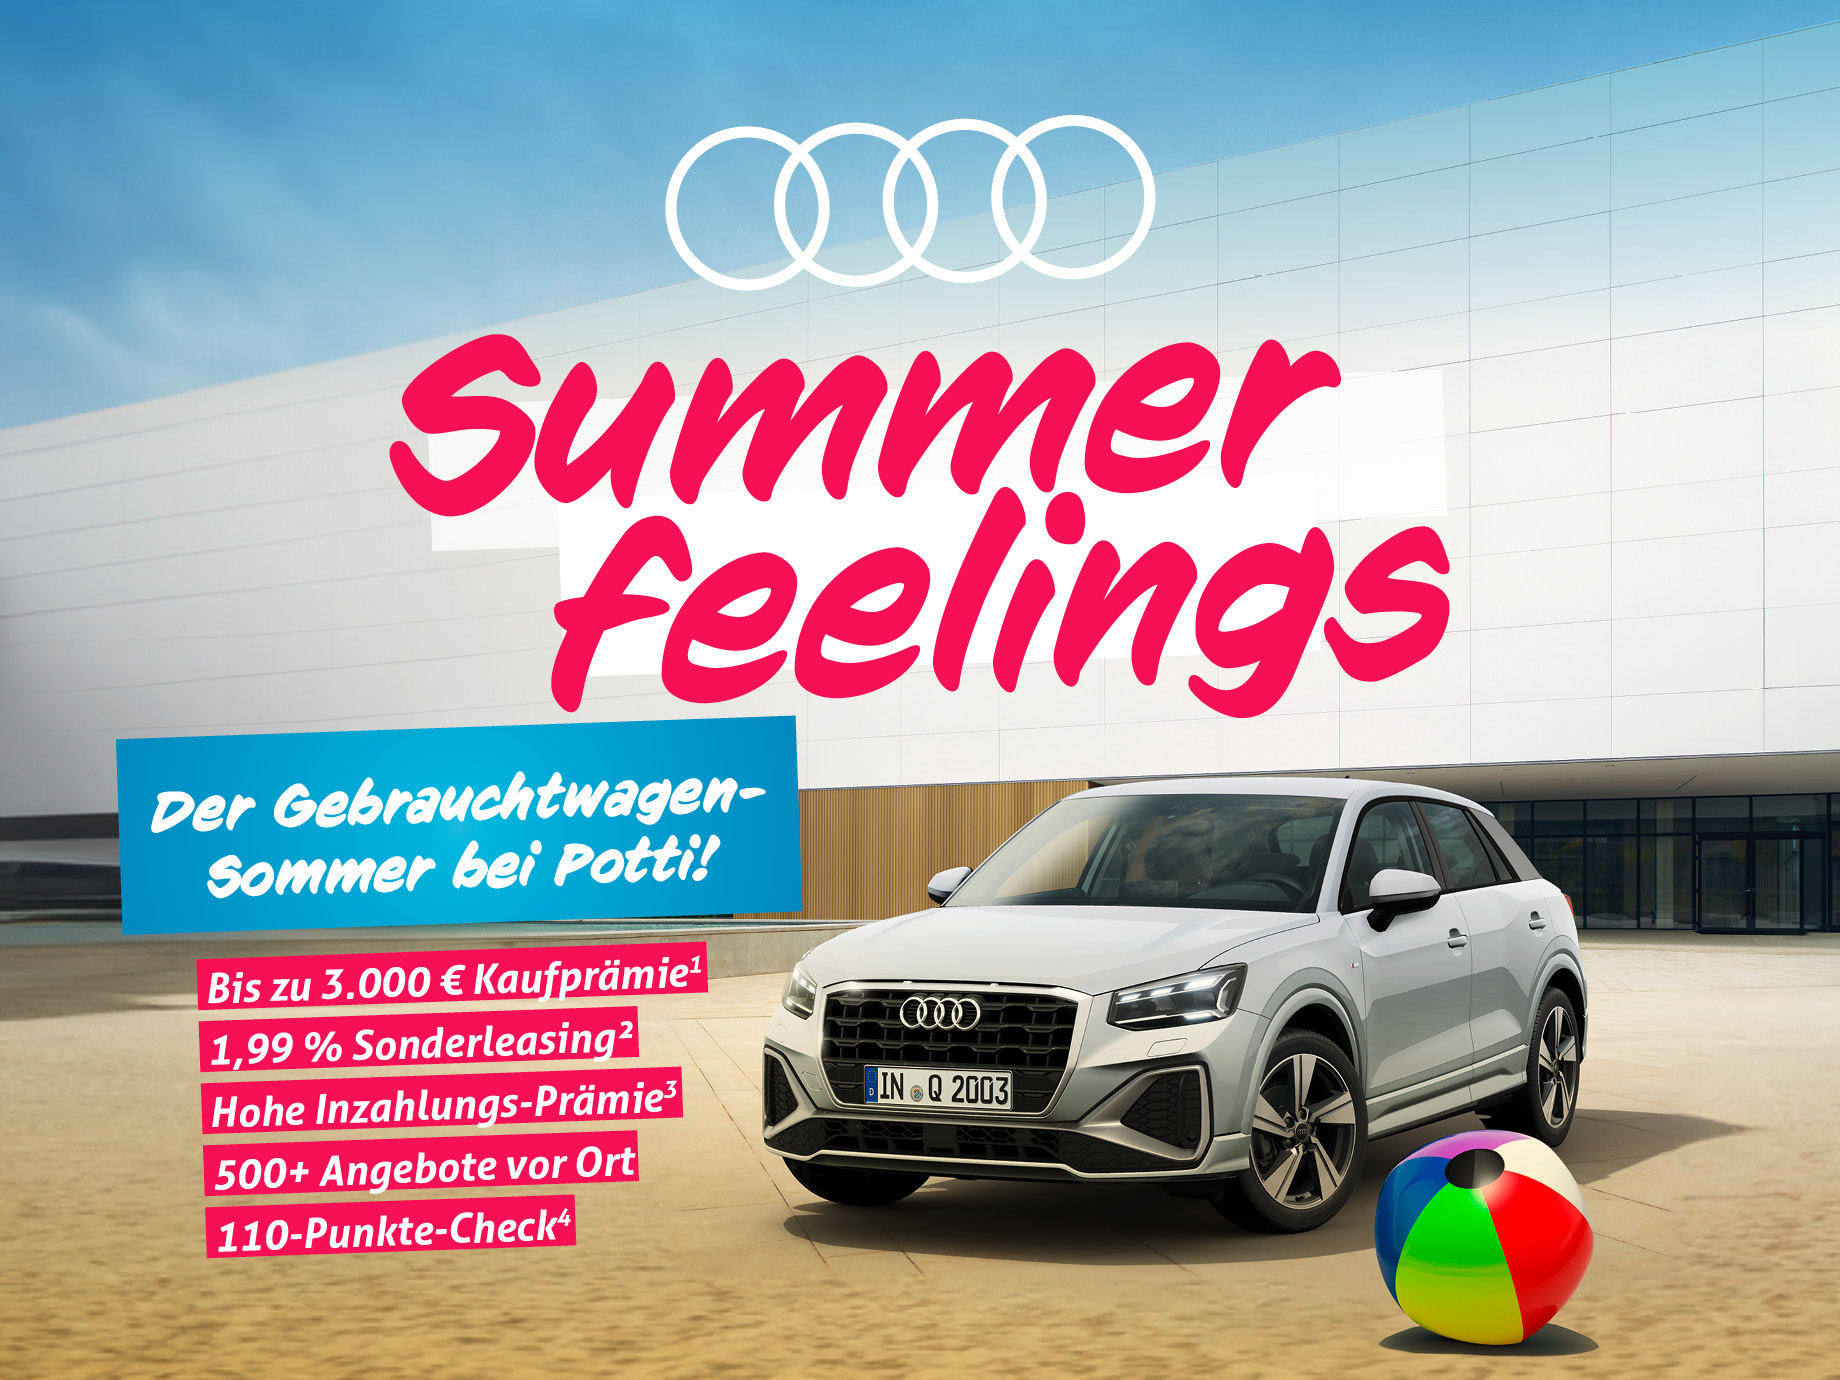 Summer feelings – der Audi Gebrauchtwagen-Sommer bei Potti! Bis zum 17.07. viele Vorteile und Prämien sichern.